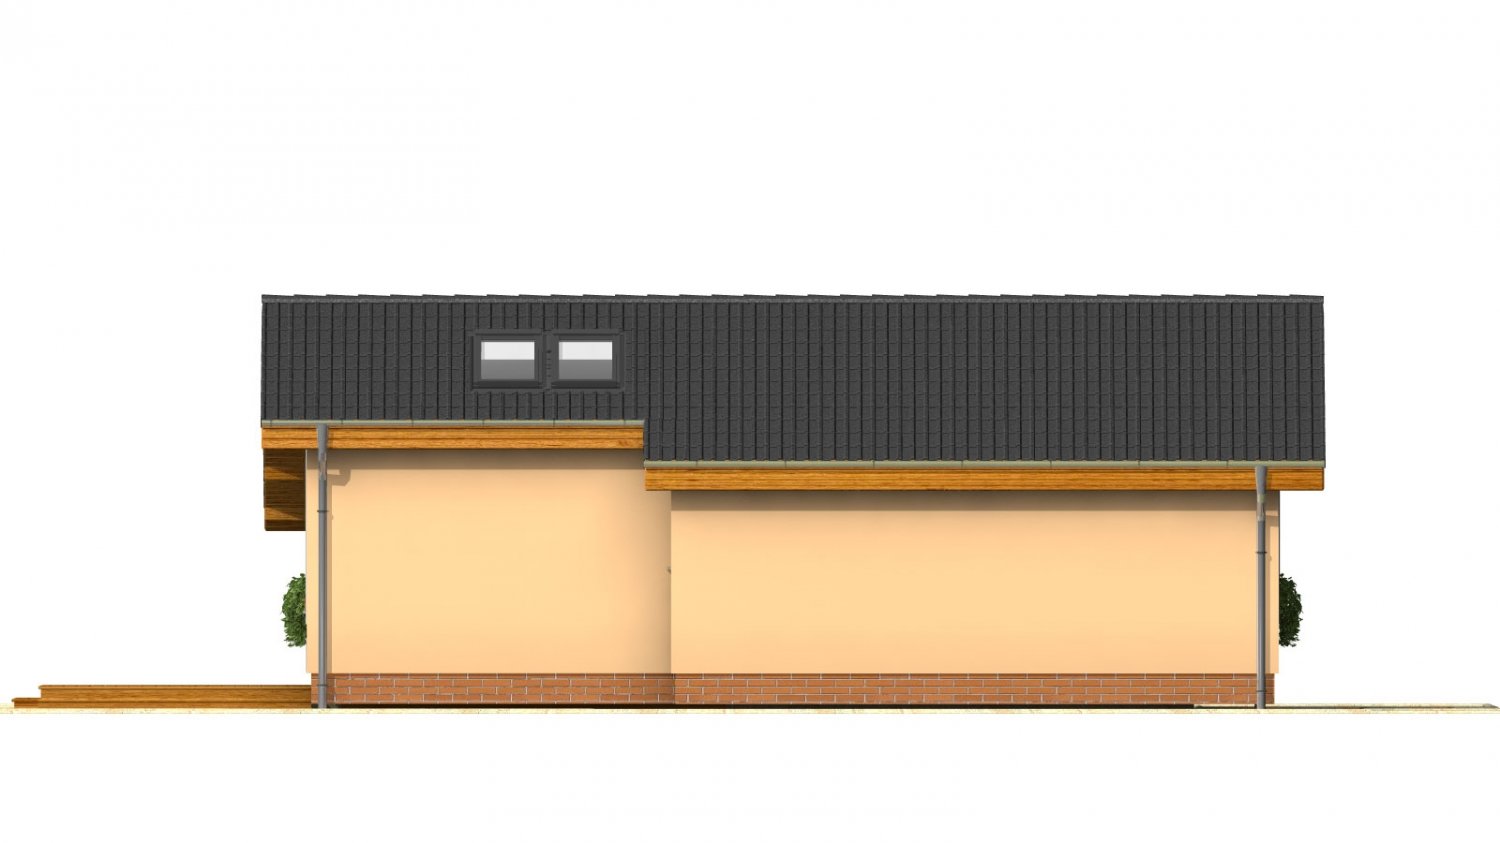 Zrkadlový pohľad 3. - Levný úzký dům na malý pozemek se sedlovou střechou, prosvětlený střešními okny Velux. Efekt podkroví na přízemí.